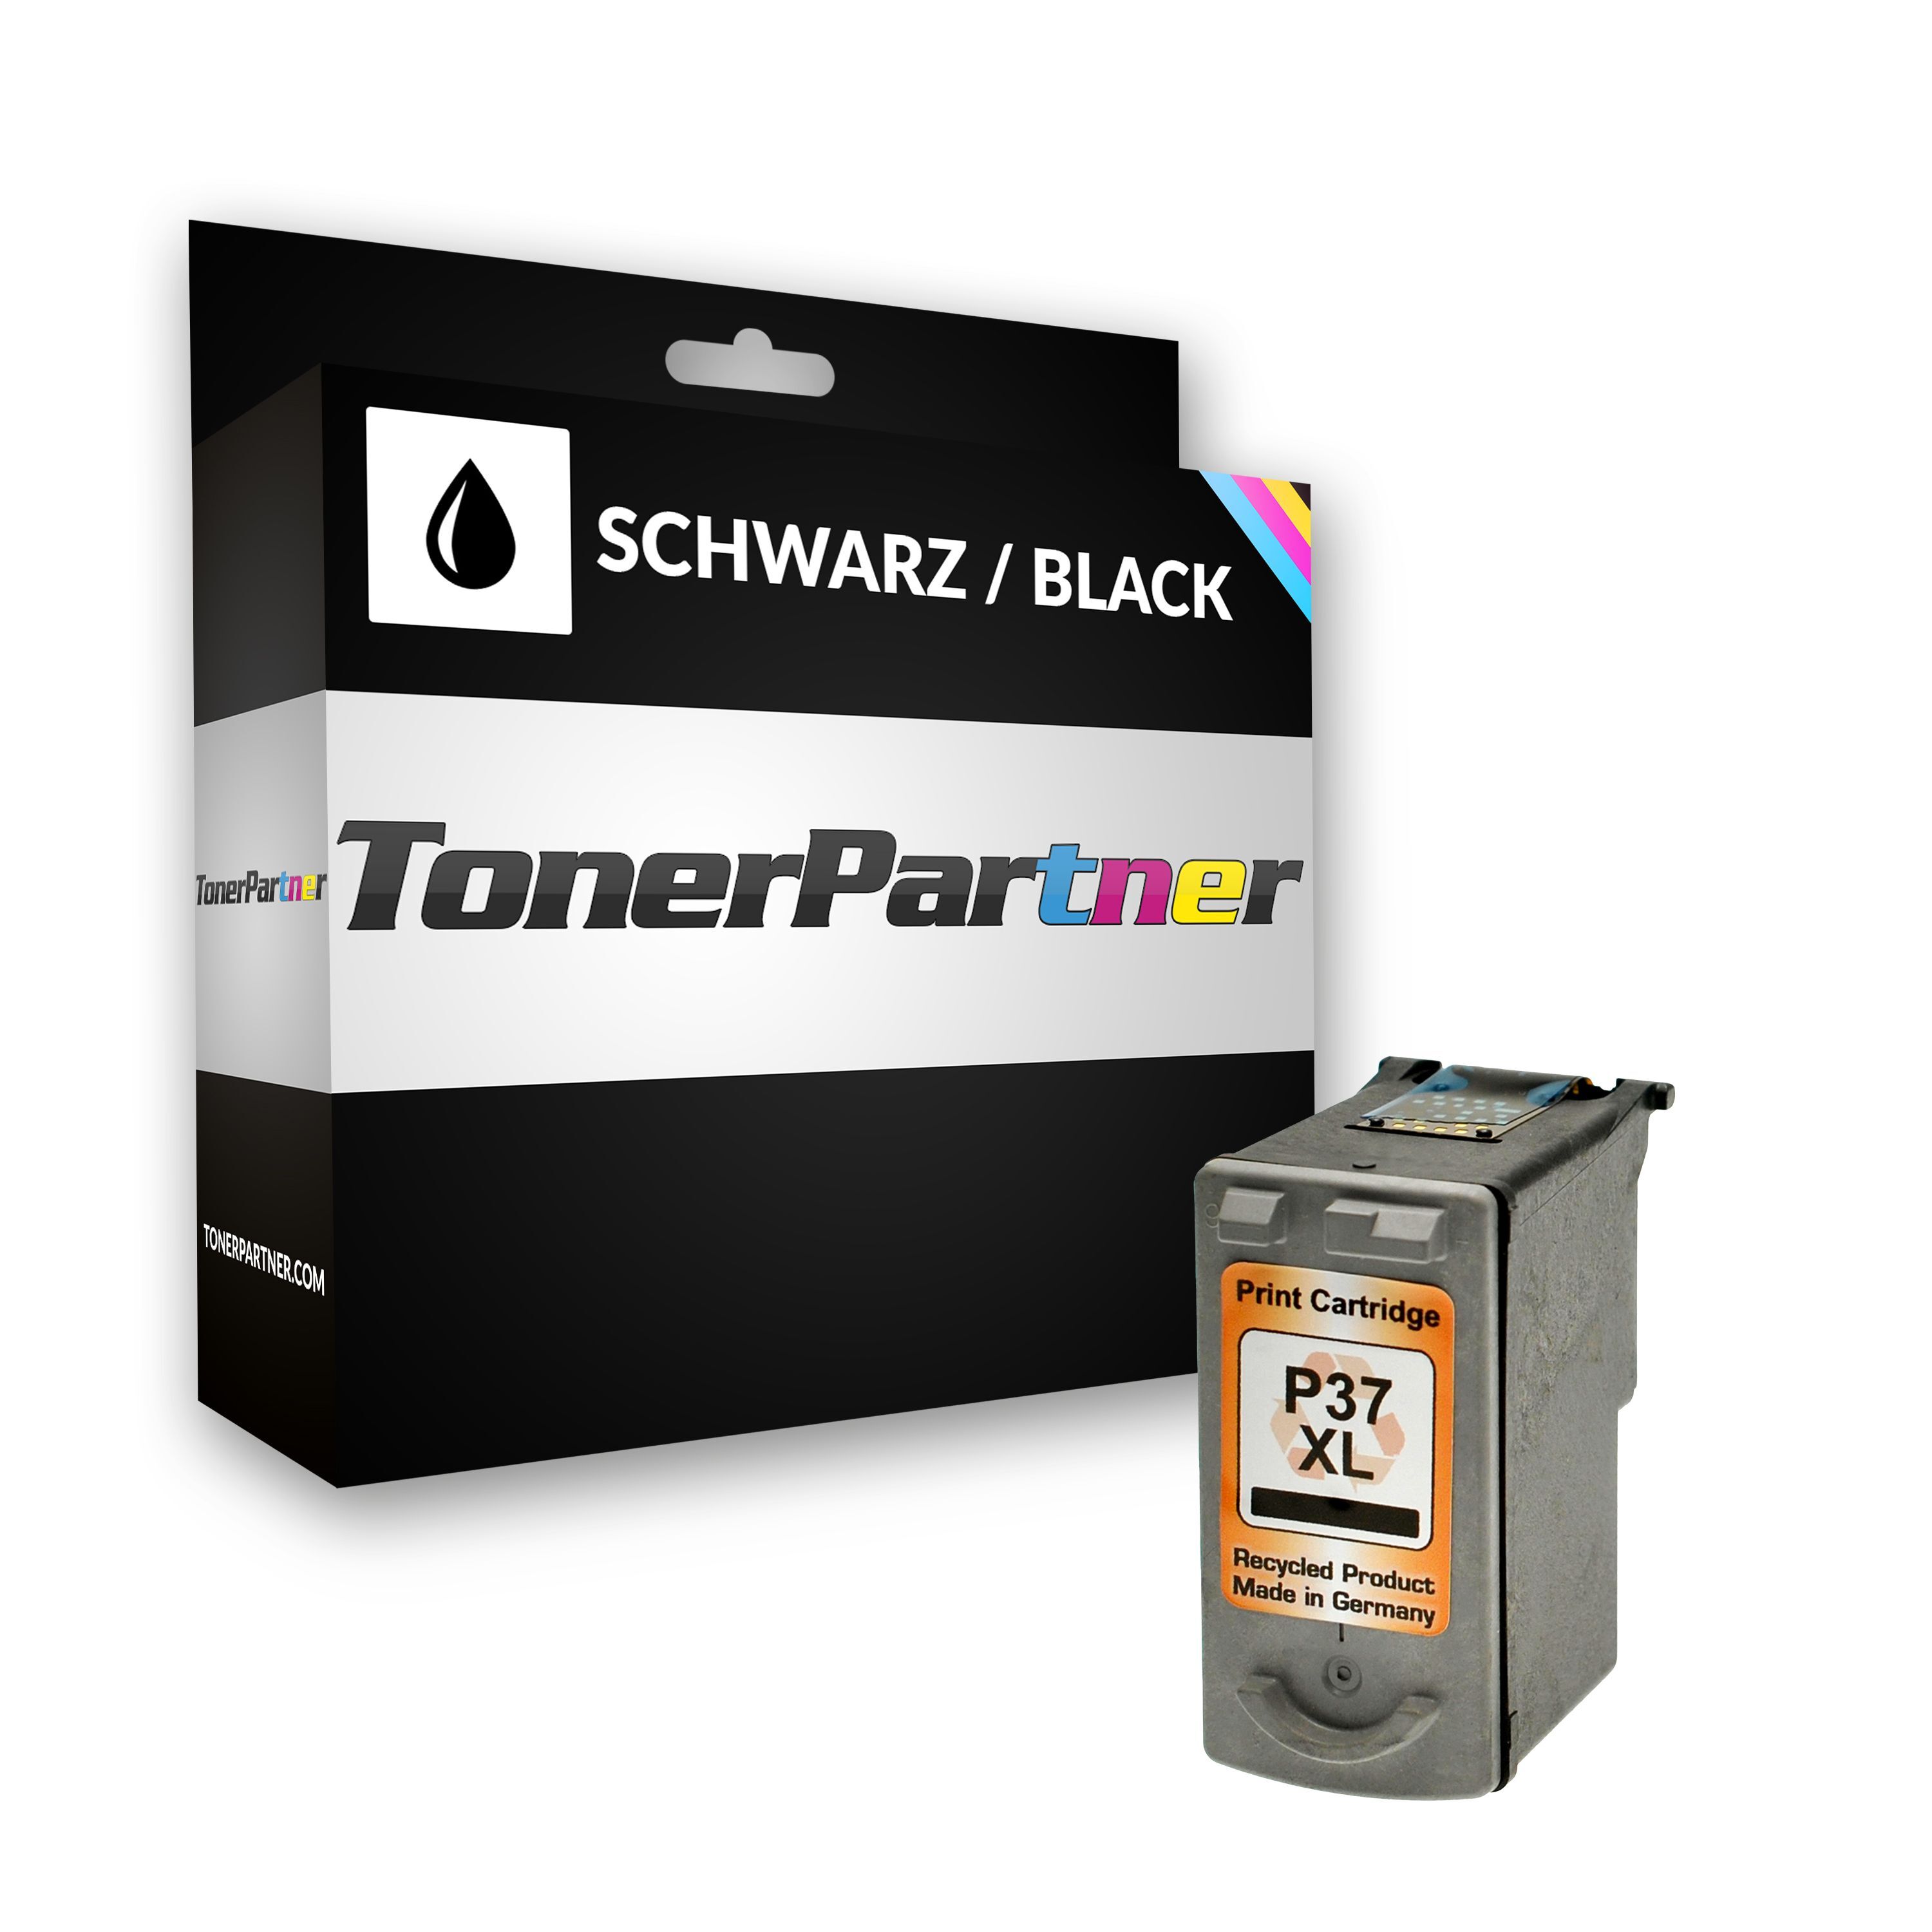 TonerPartner Compatible avec Canon Pixma IP 1900 cartouche d'encre (PG-37 / 2145 B 001) noir, 219 pages, 4,58 centimes par page, contenu: 9 ml de TonerPartner